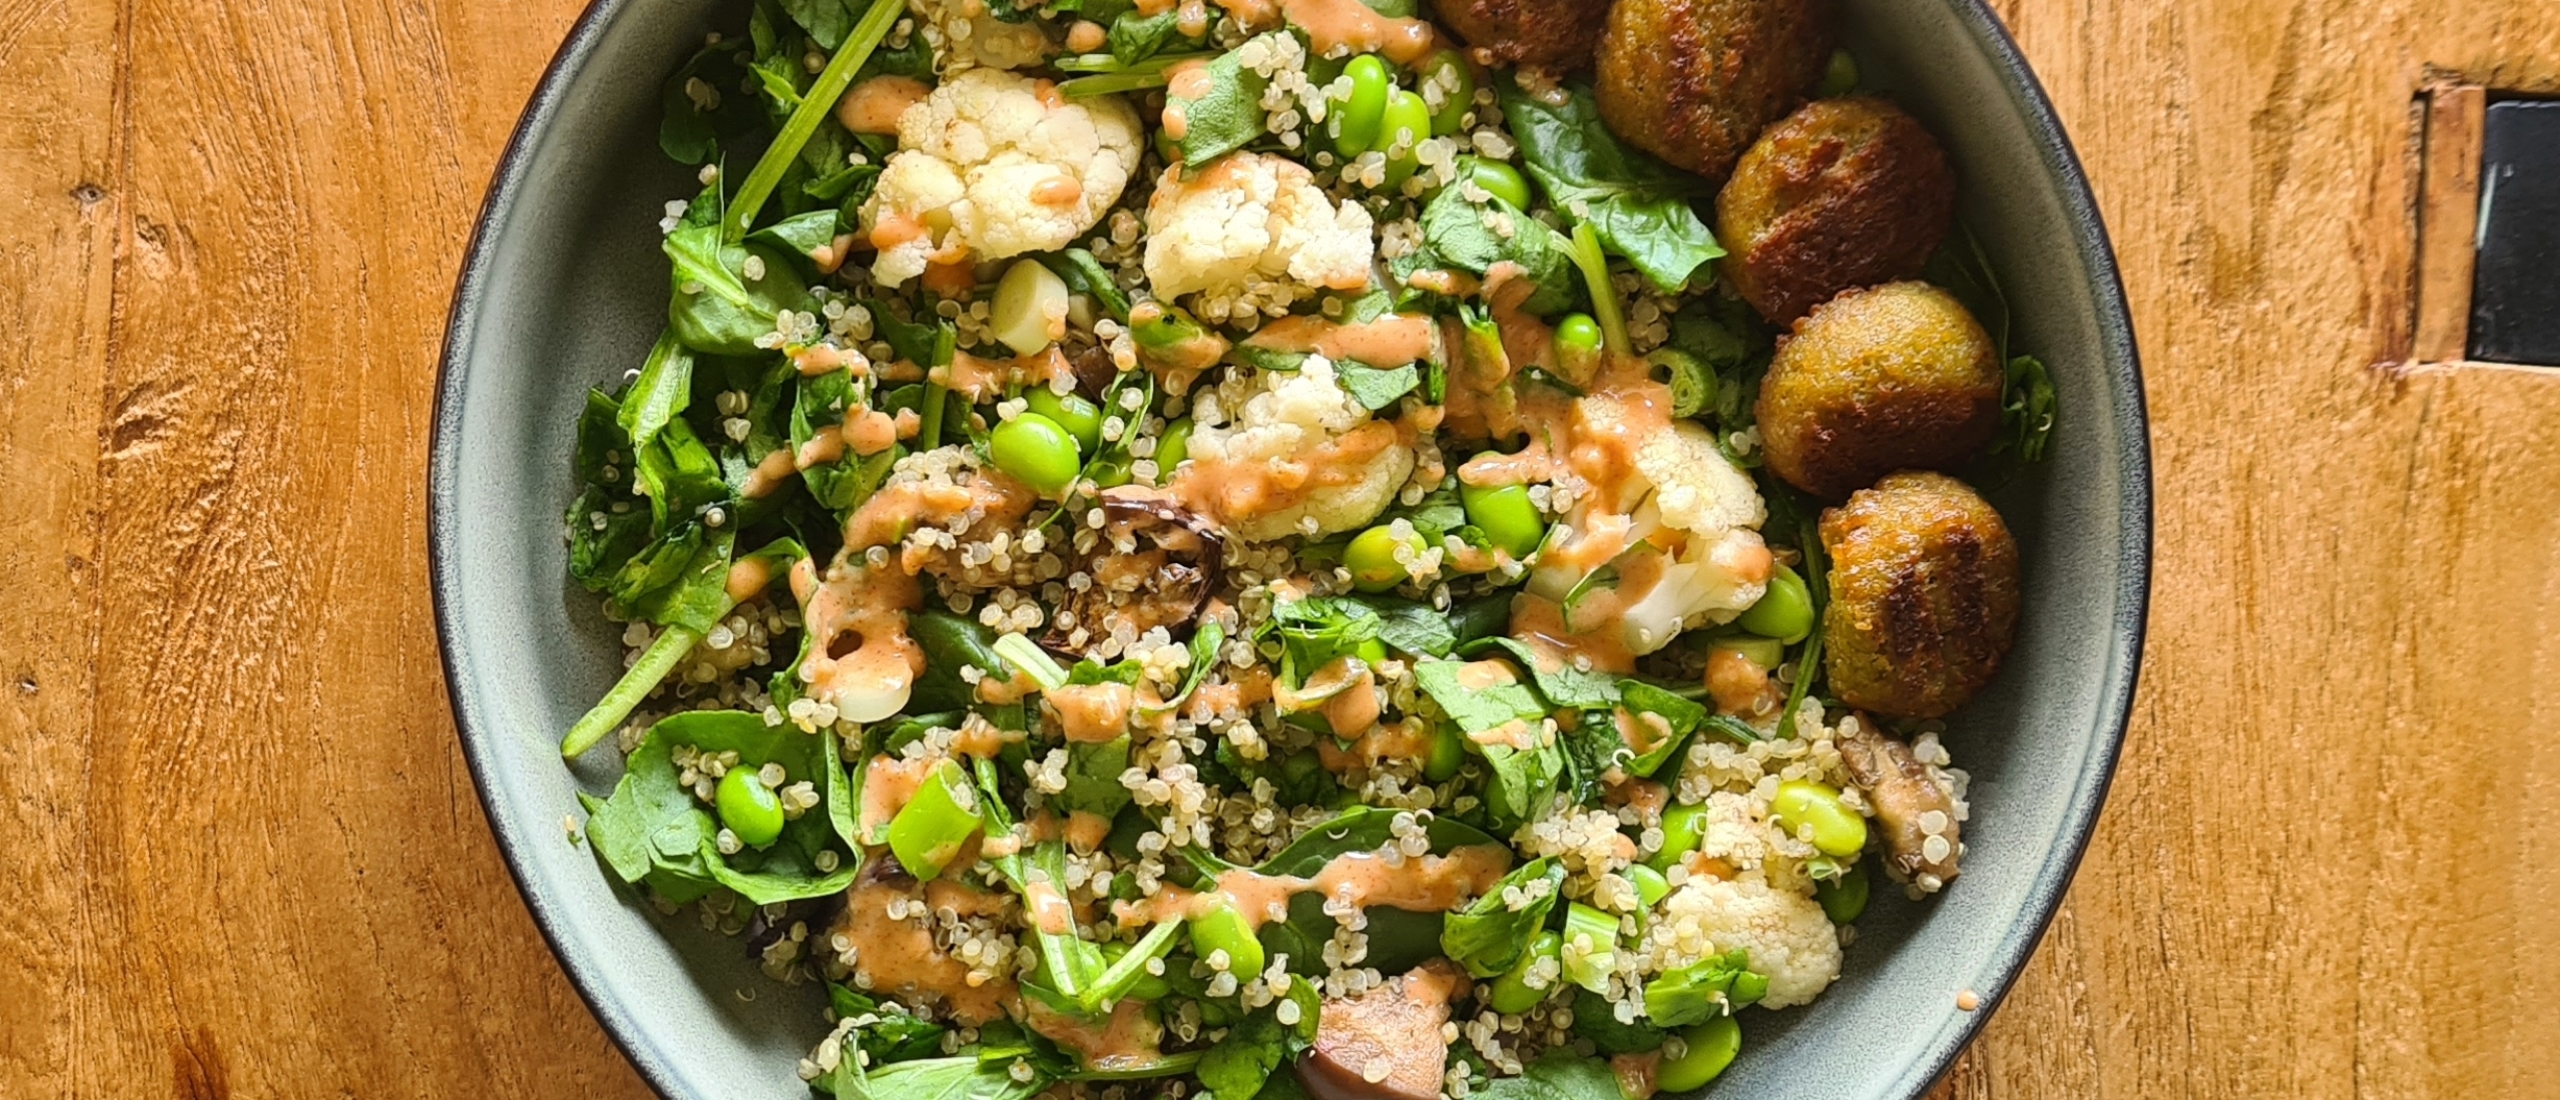 Bloemkool quinoa salade: vegan, eiwitrijk en supergezond!